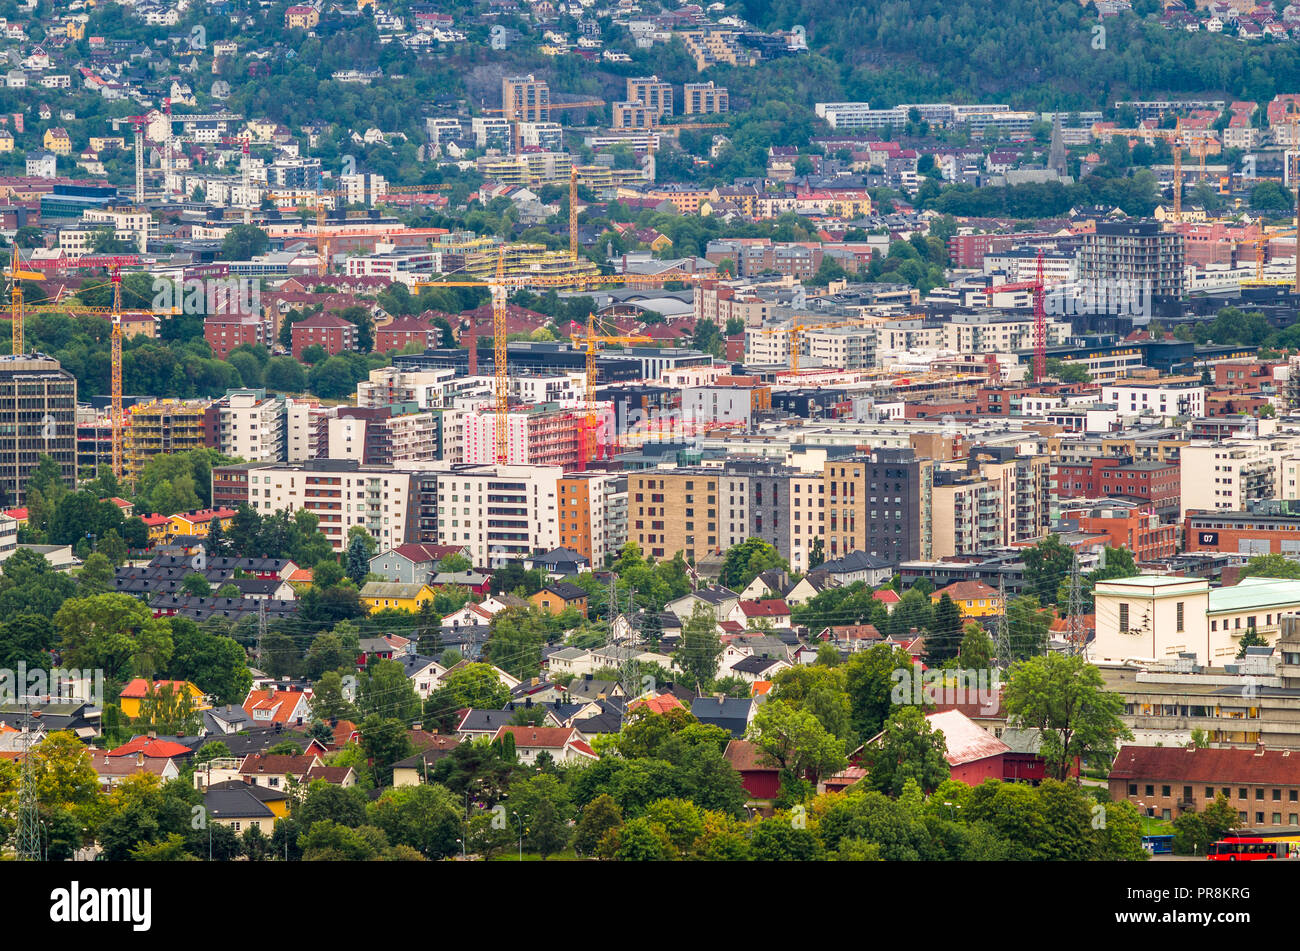 Loren - schnell wachsenden Teil von Oslo, Norwegen. Stockfoto